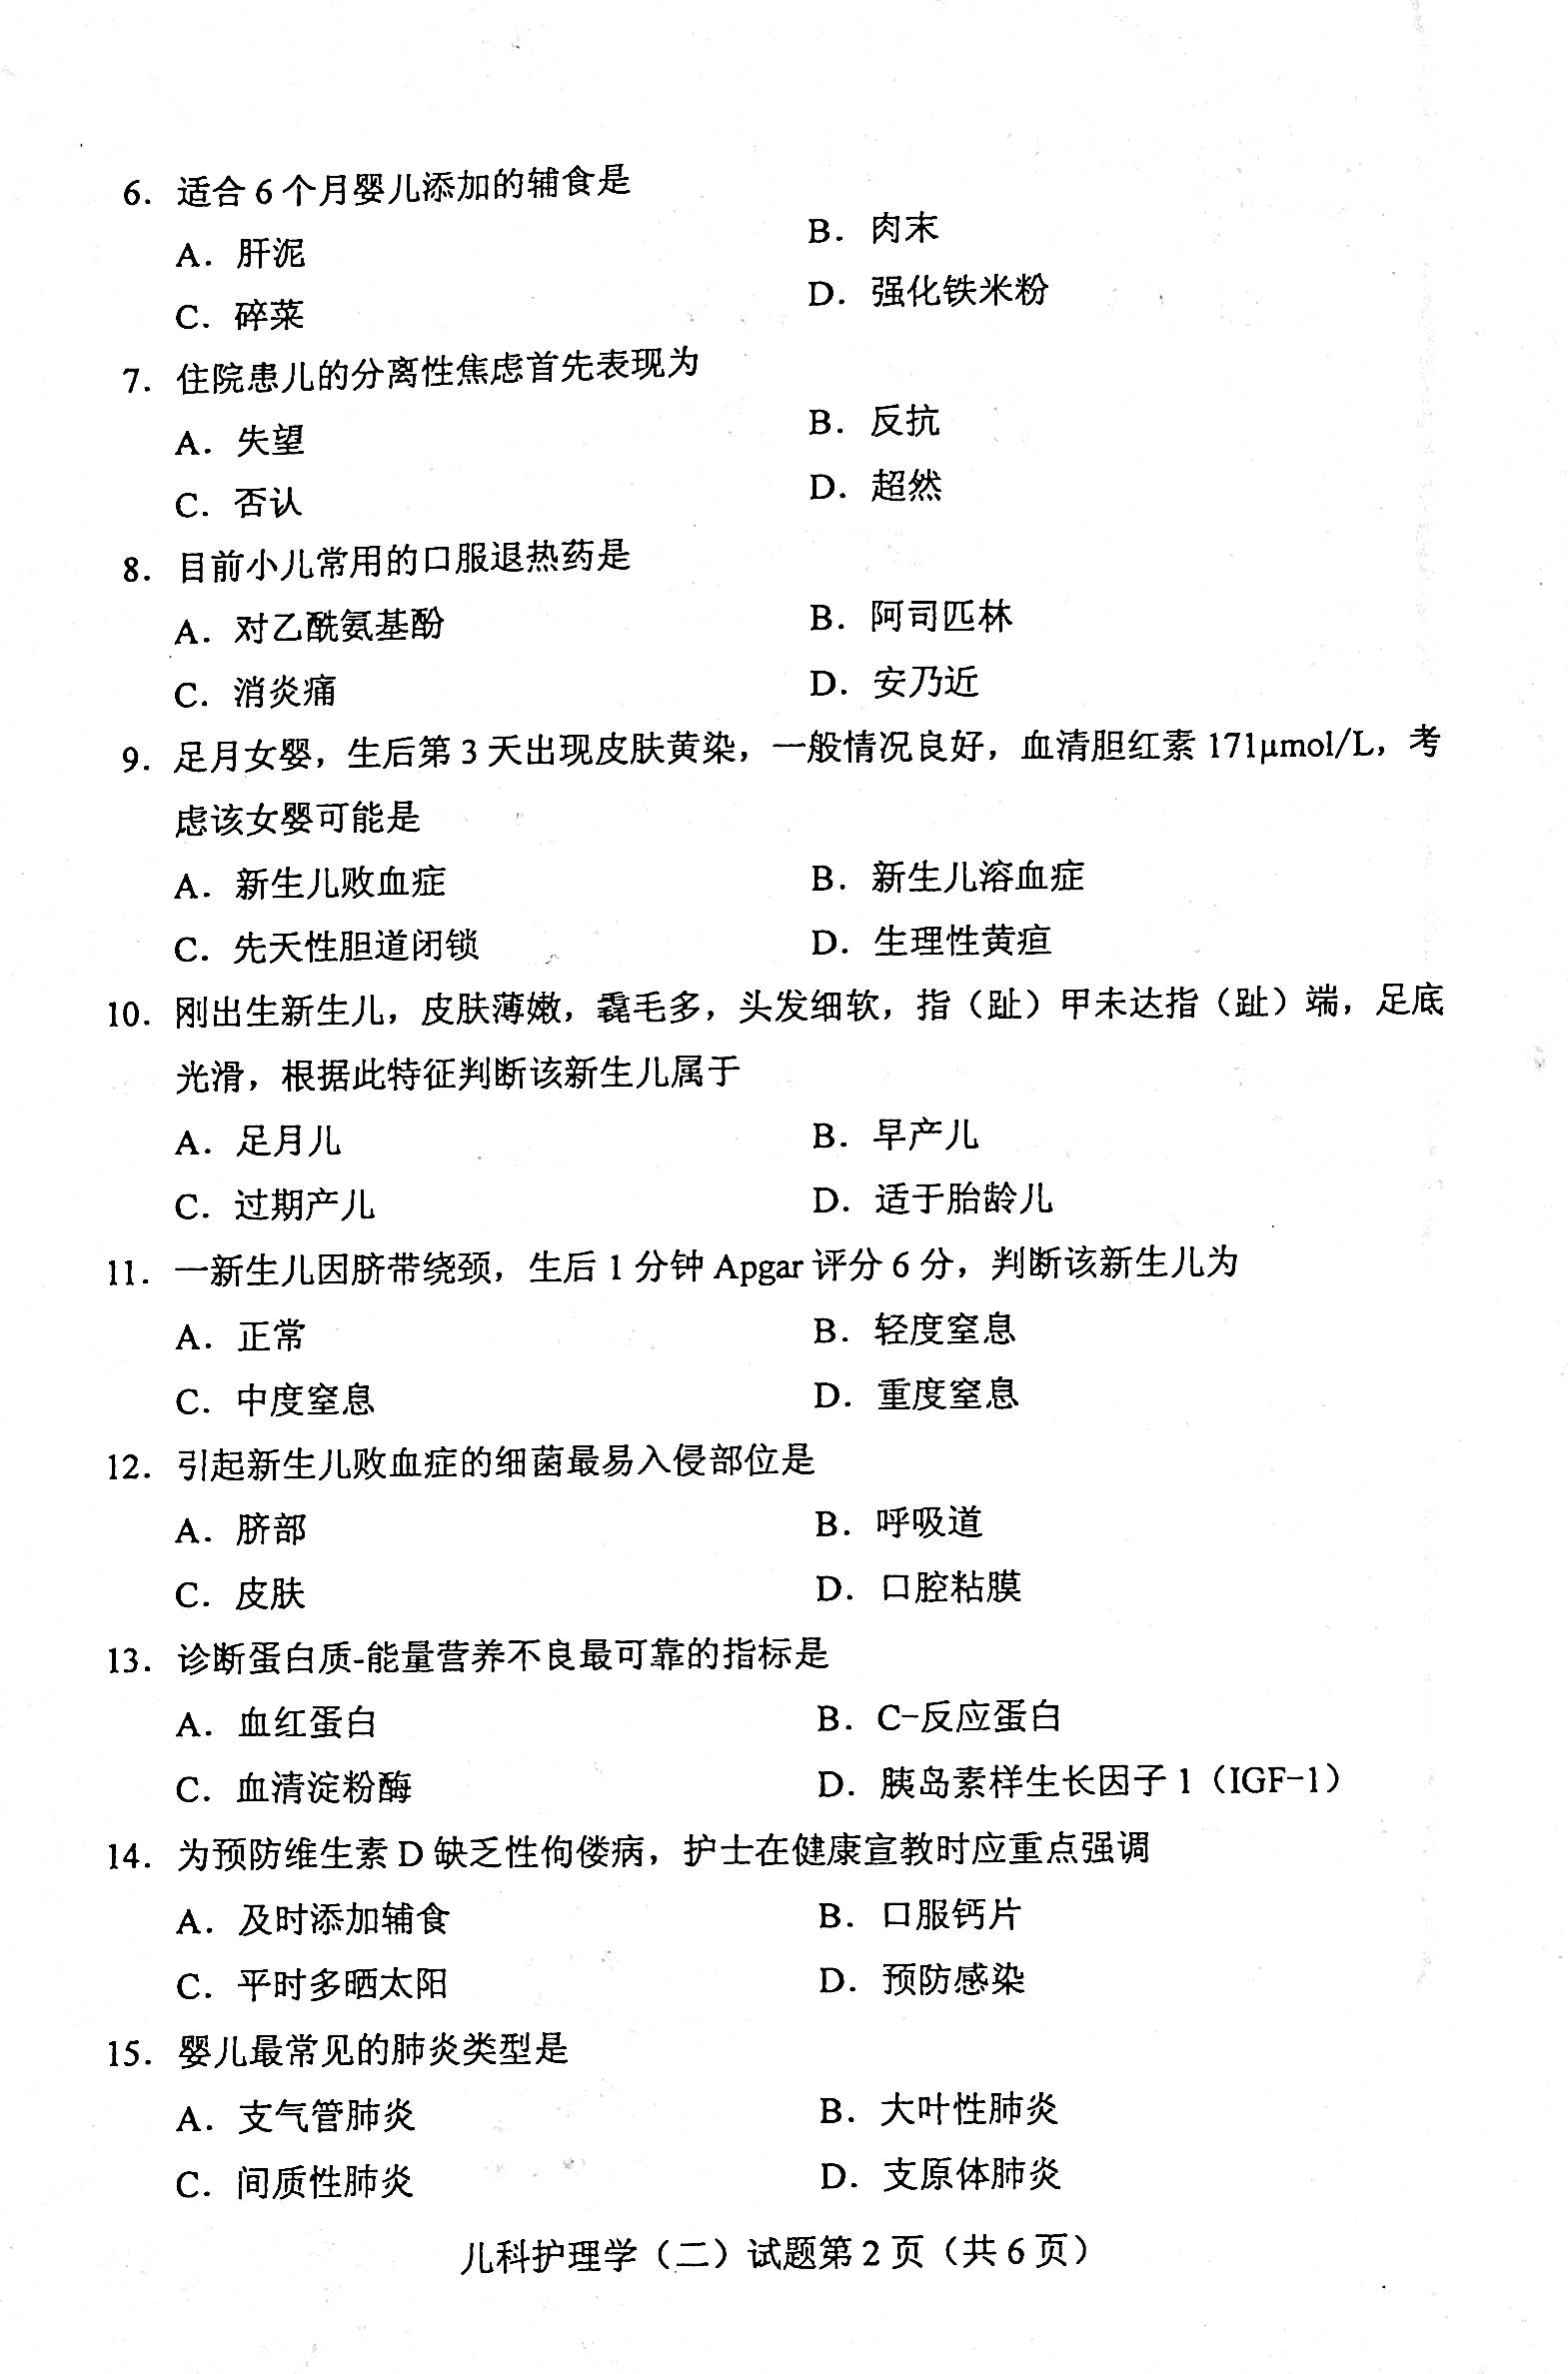 2020年08月贵州自考儿科护理学（二）03011真题及答案